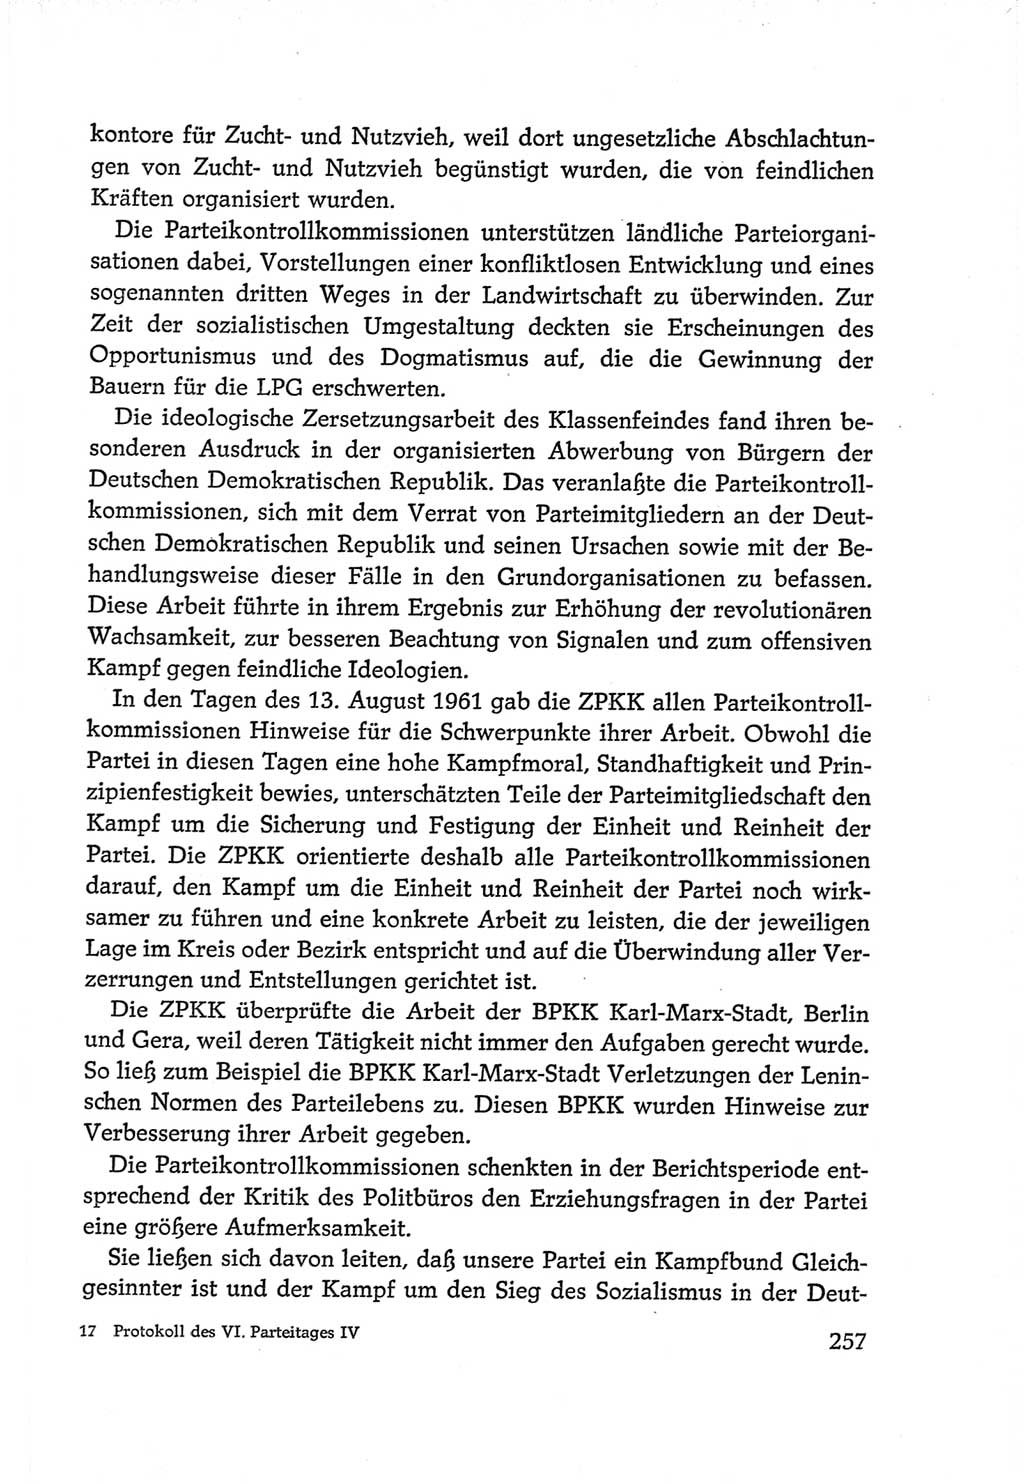 Protokoll der Verhandlungen des Ⅵ. Parteitages der Sozialistischen Einheitspartei Deutschlands (SED) [Deutsche Demokratische Republik (DDR)] 1963, Band Ⅳ, Seite 257 (Prot. Verh. Ⅵ. PT SED DDR 1963, Bd. Ⅳ, S. 257)